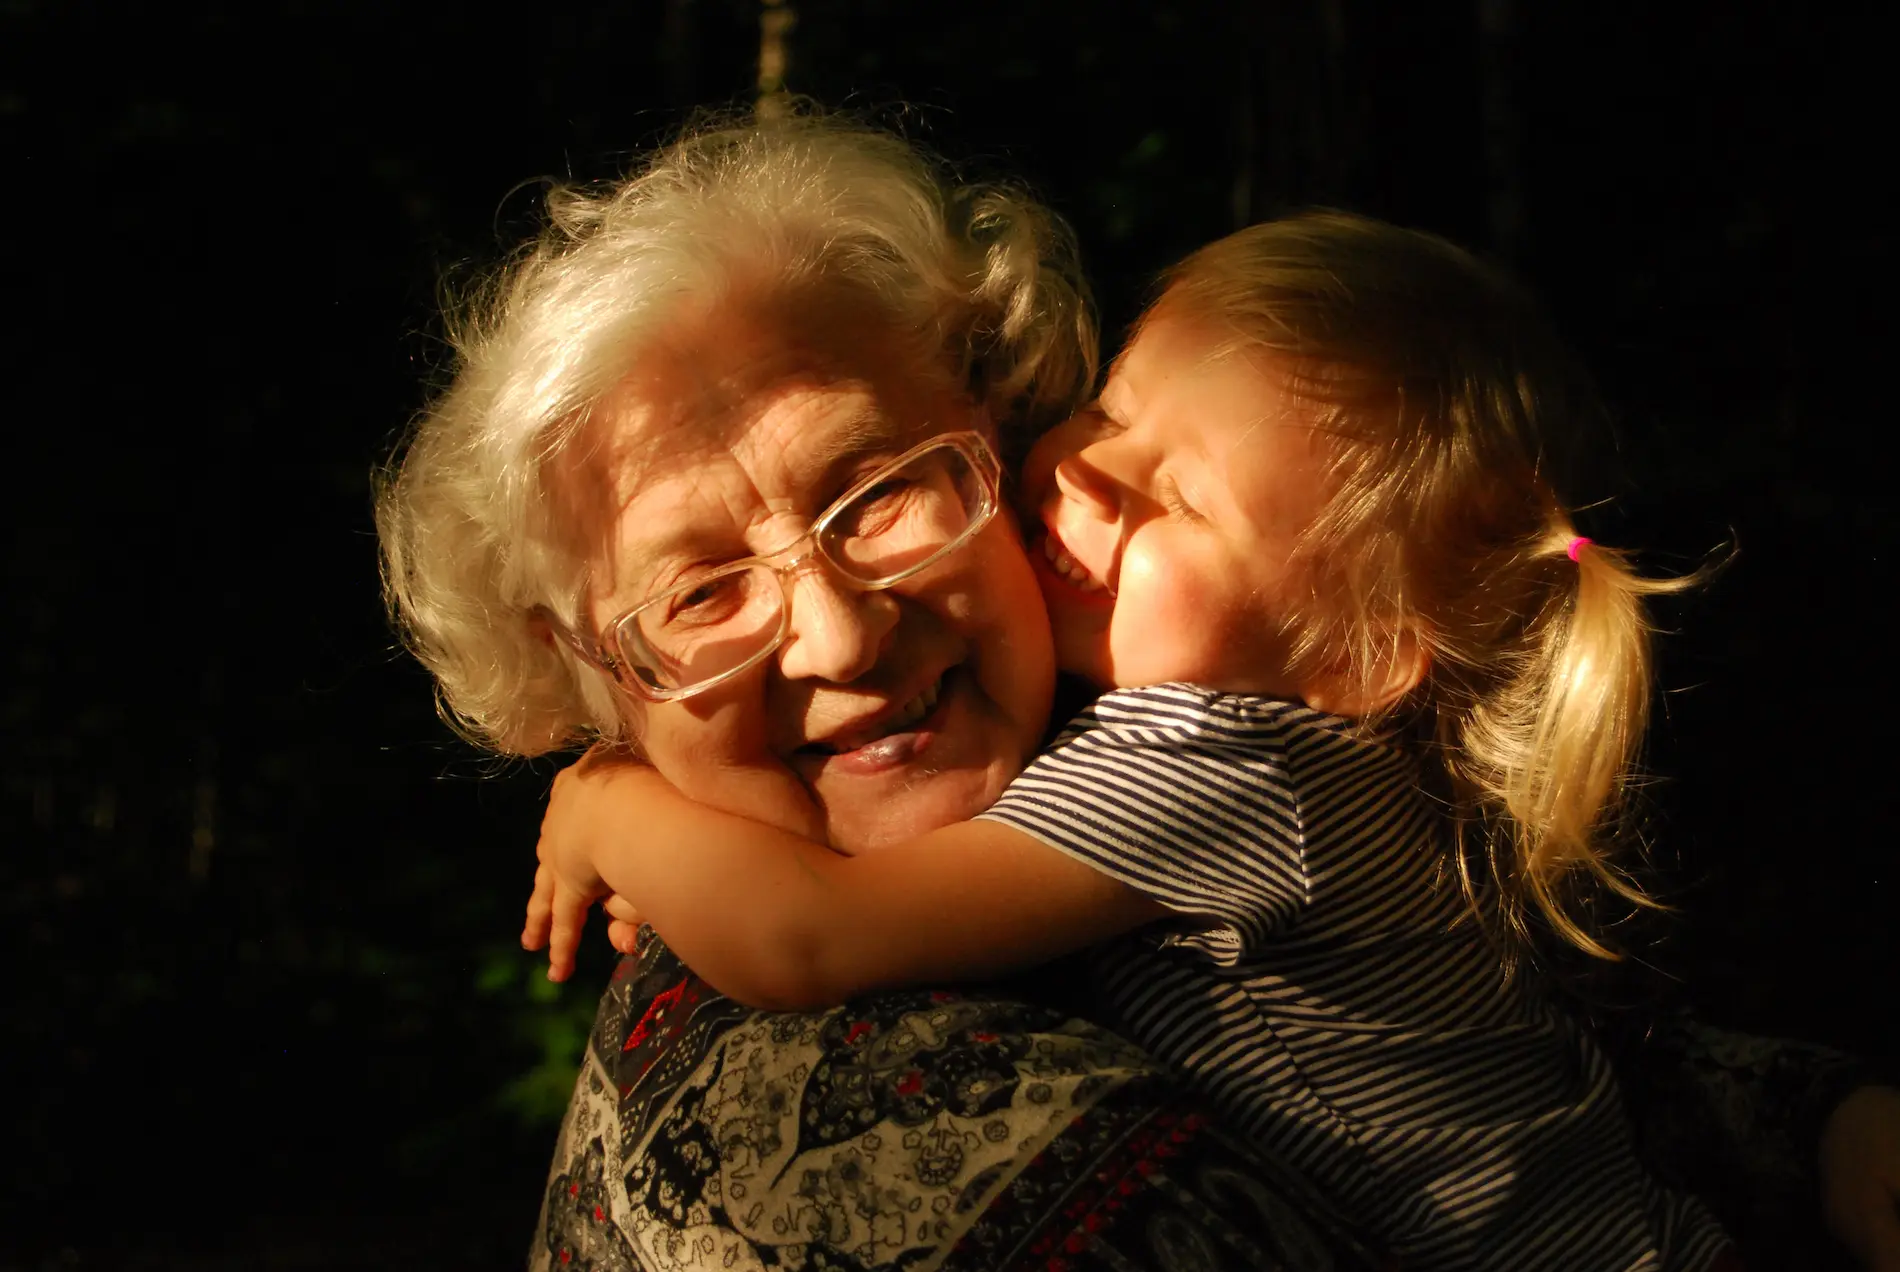 Abuela con su nieta - pensión de viudedad - CertificadoElectronico.es